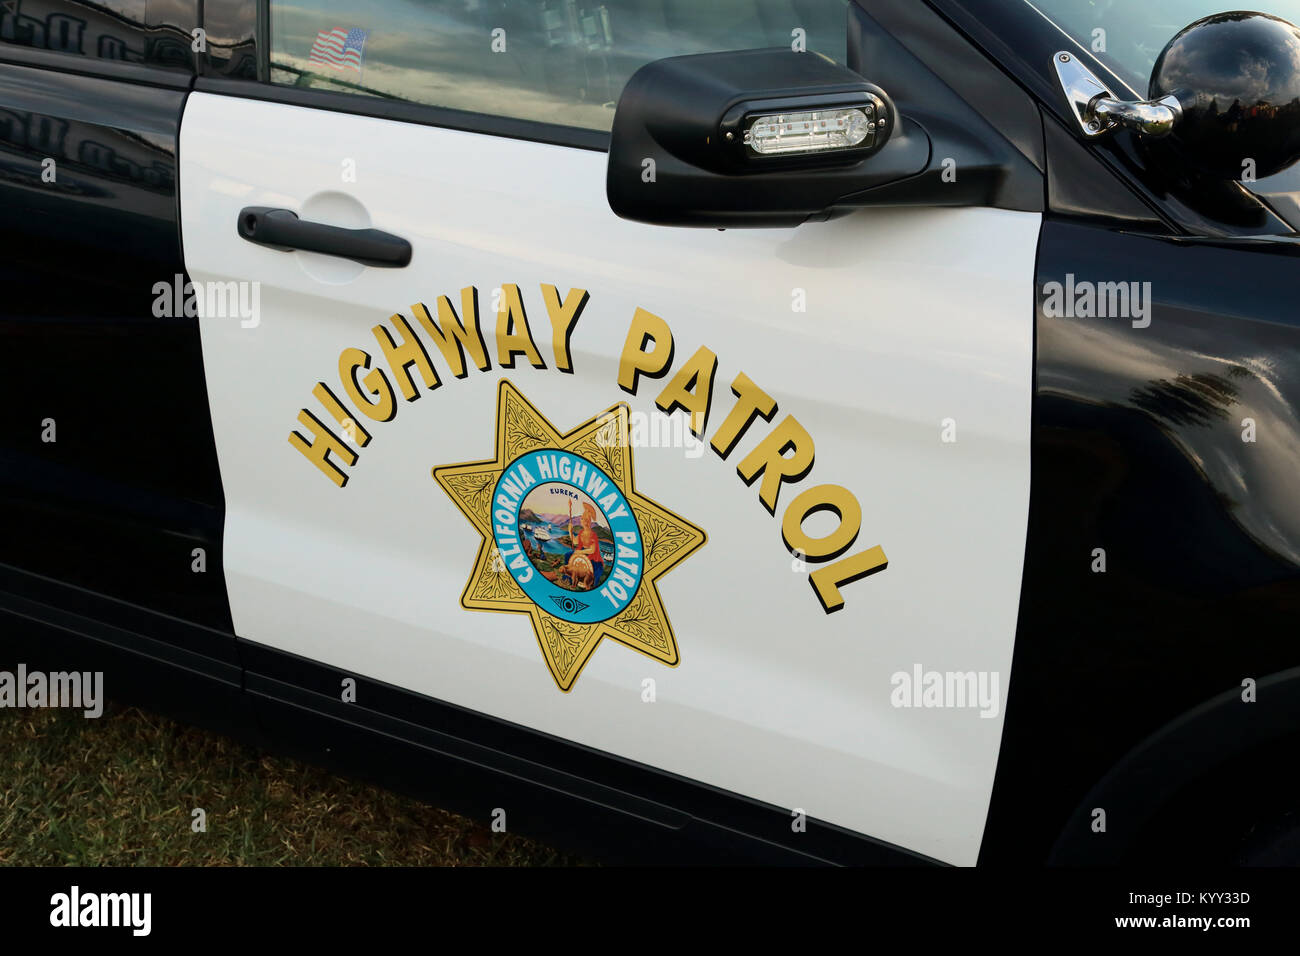 Van Nuys, CA/USA - Oktober 23, 2016: ein Polizeiauto Lager der California Highway Patrol Logo ist auf Anzeige an einer Community resource Messe gezeigt. Stockfoto